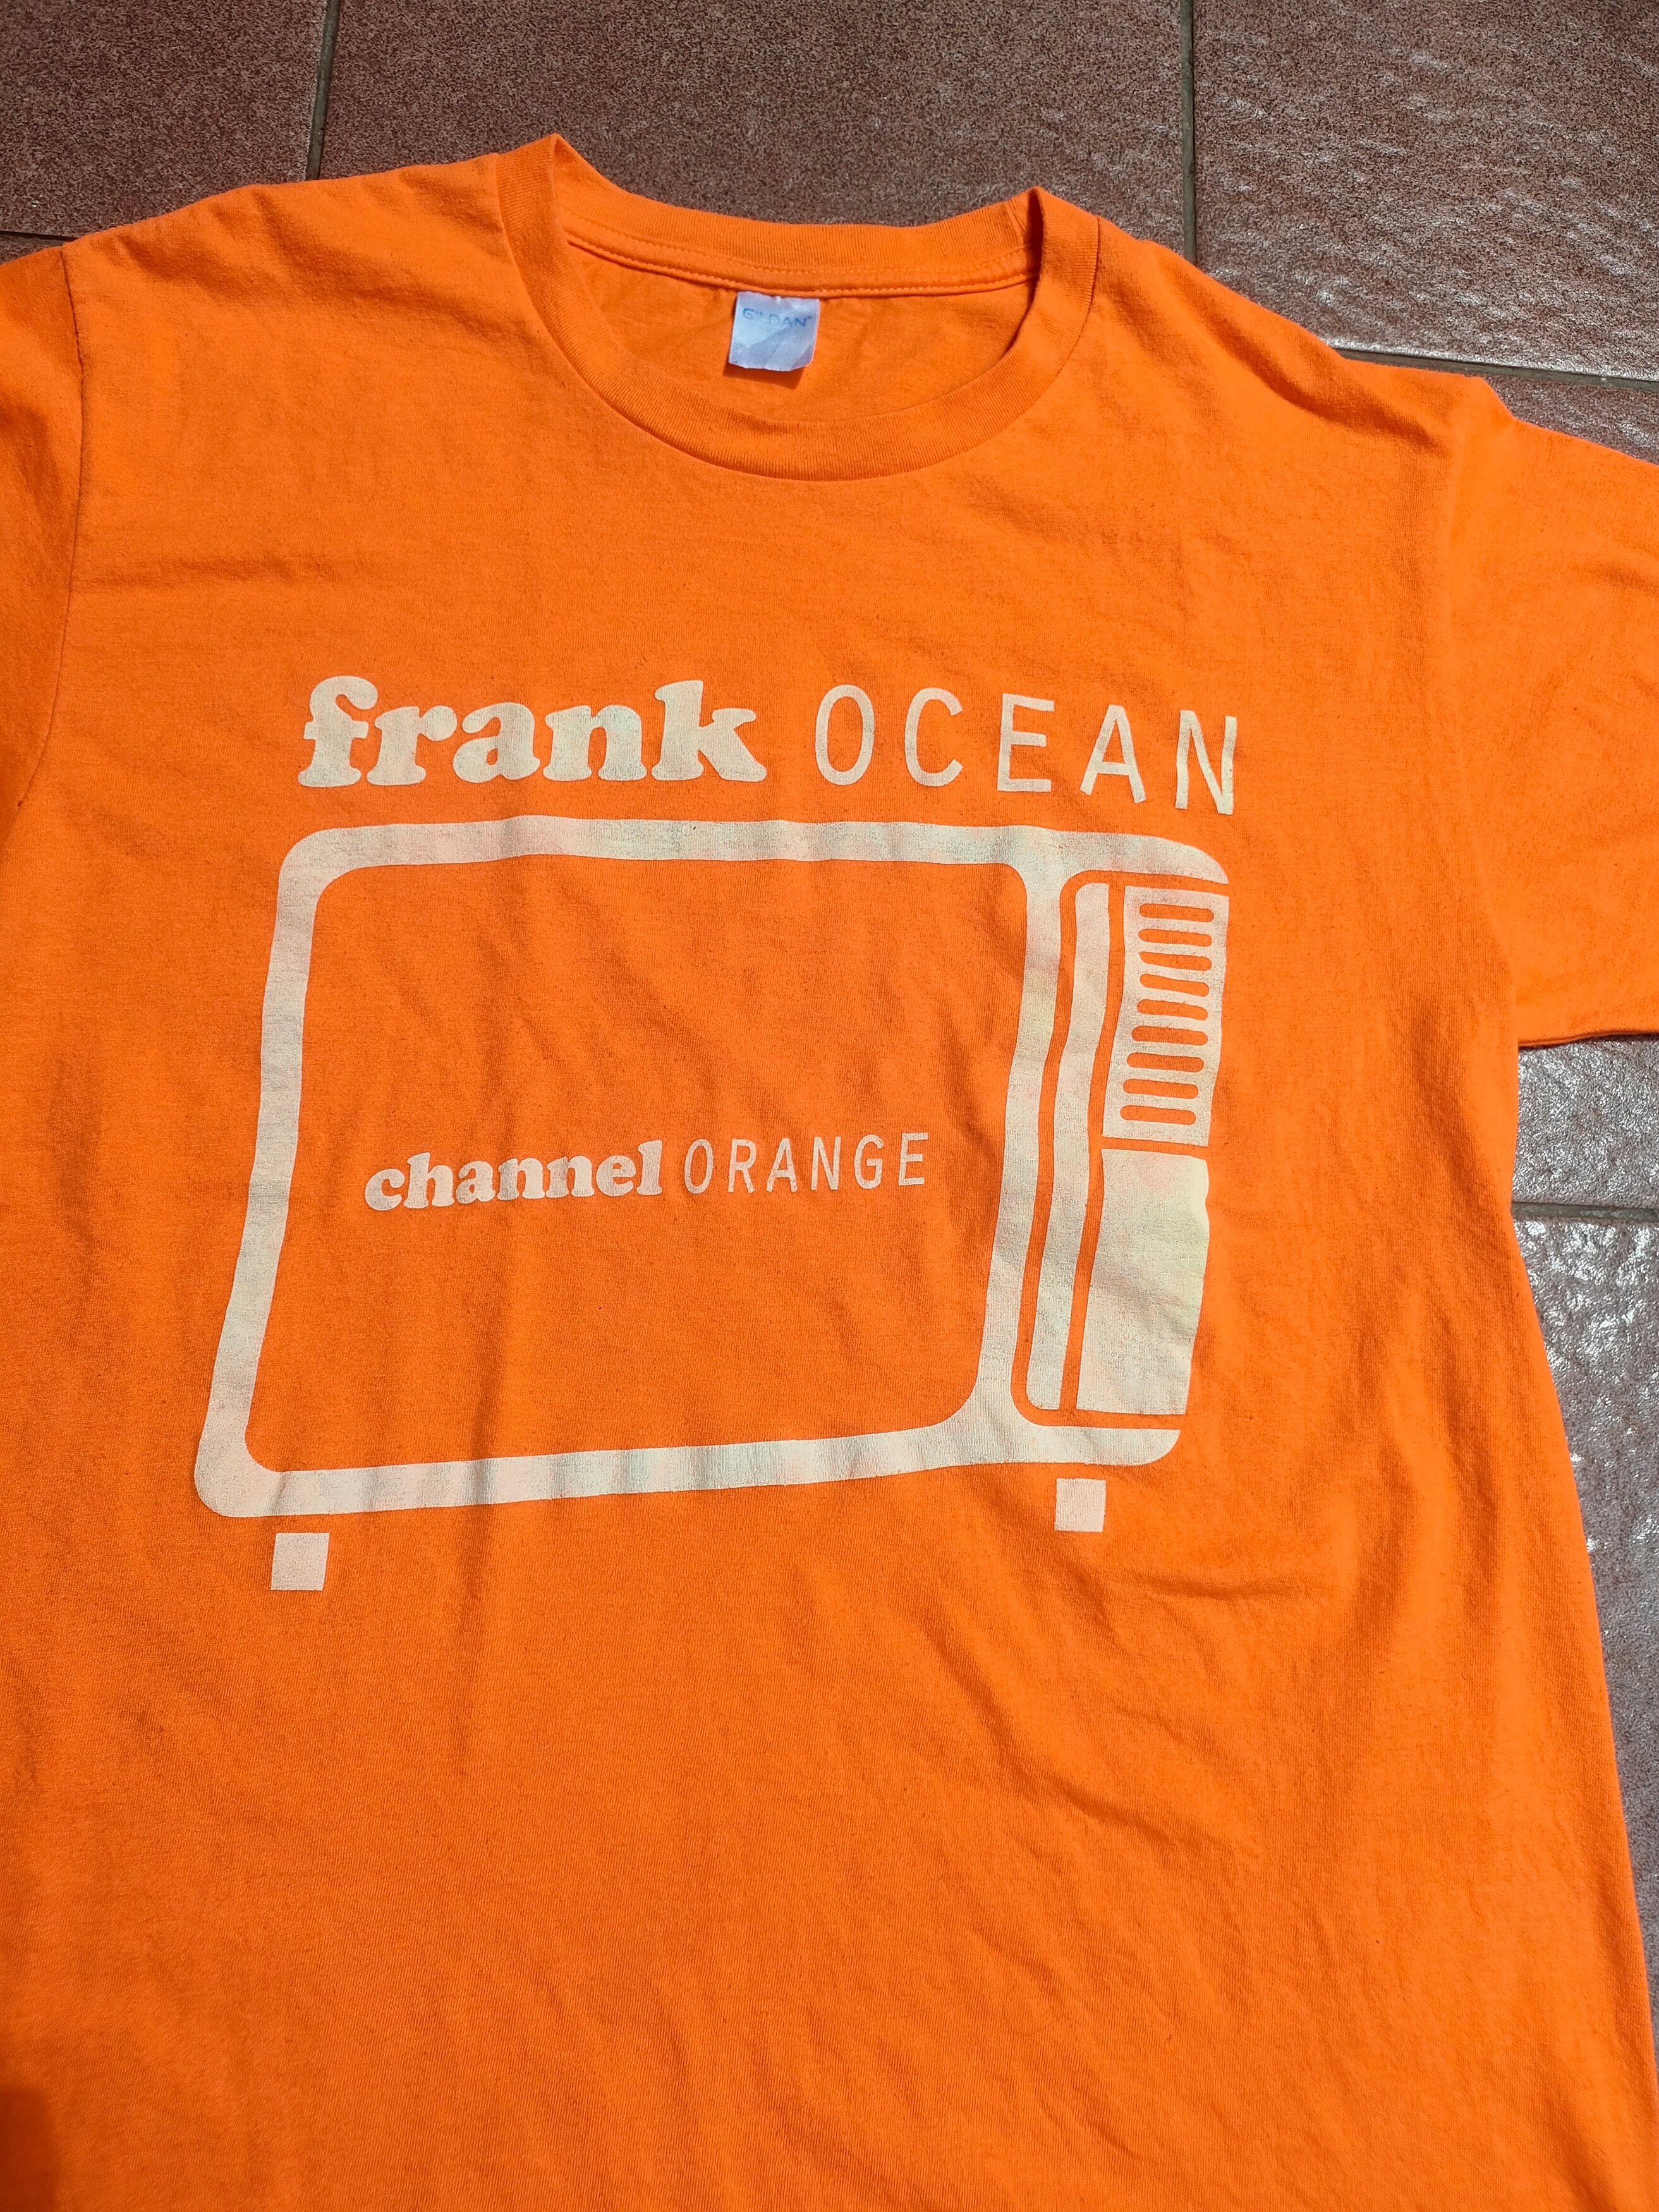 Vintage - Frank Ocean - Channel Orange - Def Jam Recordings - 5